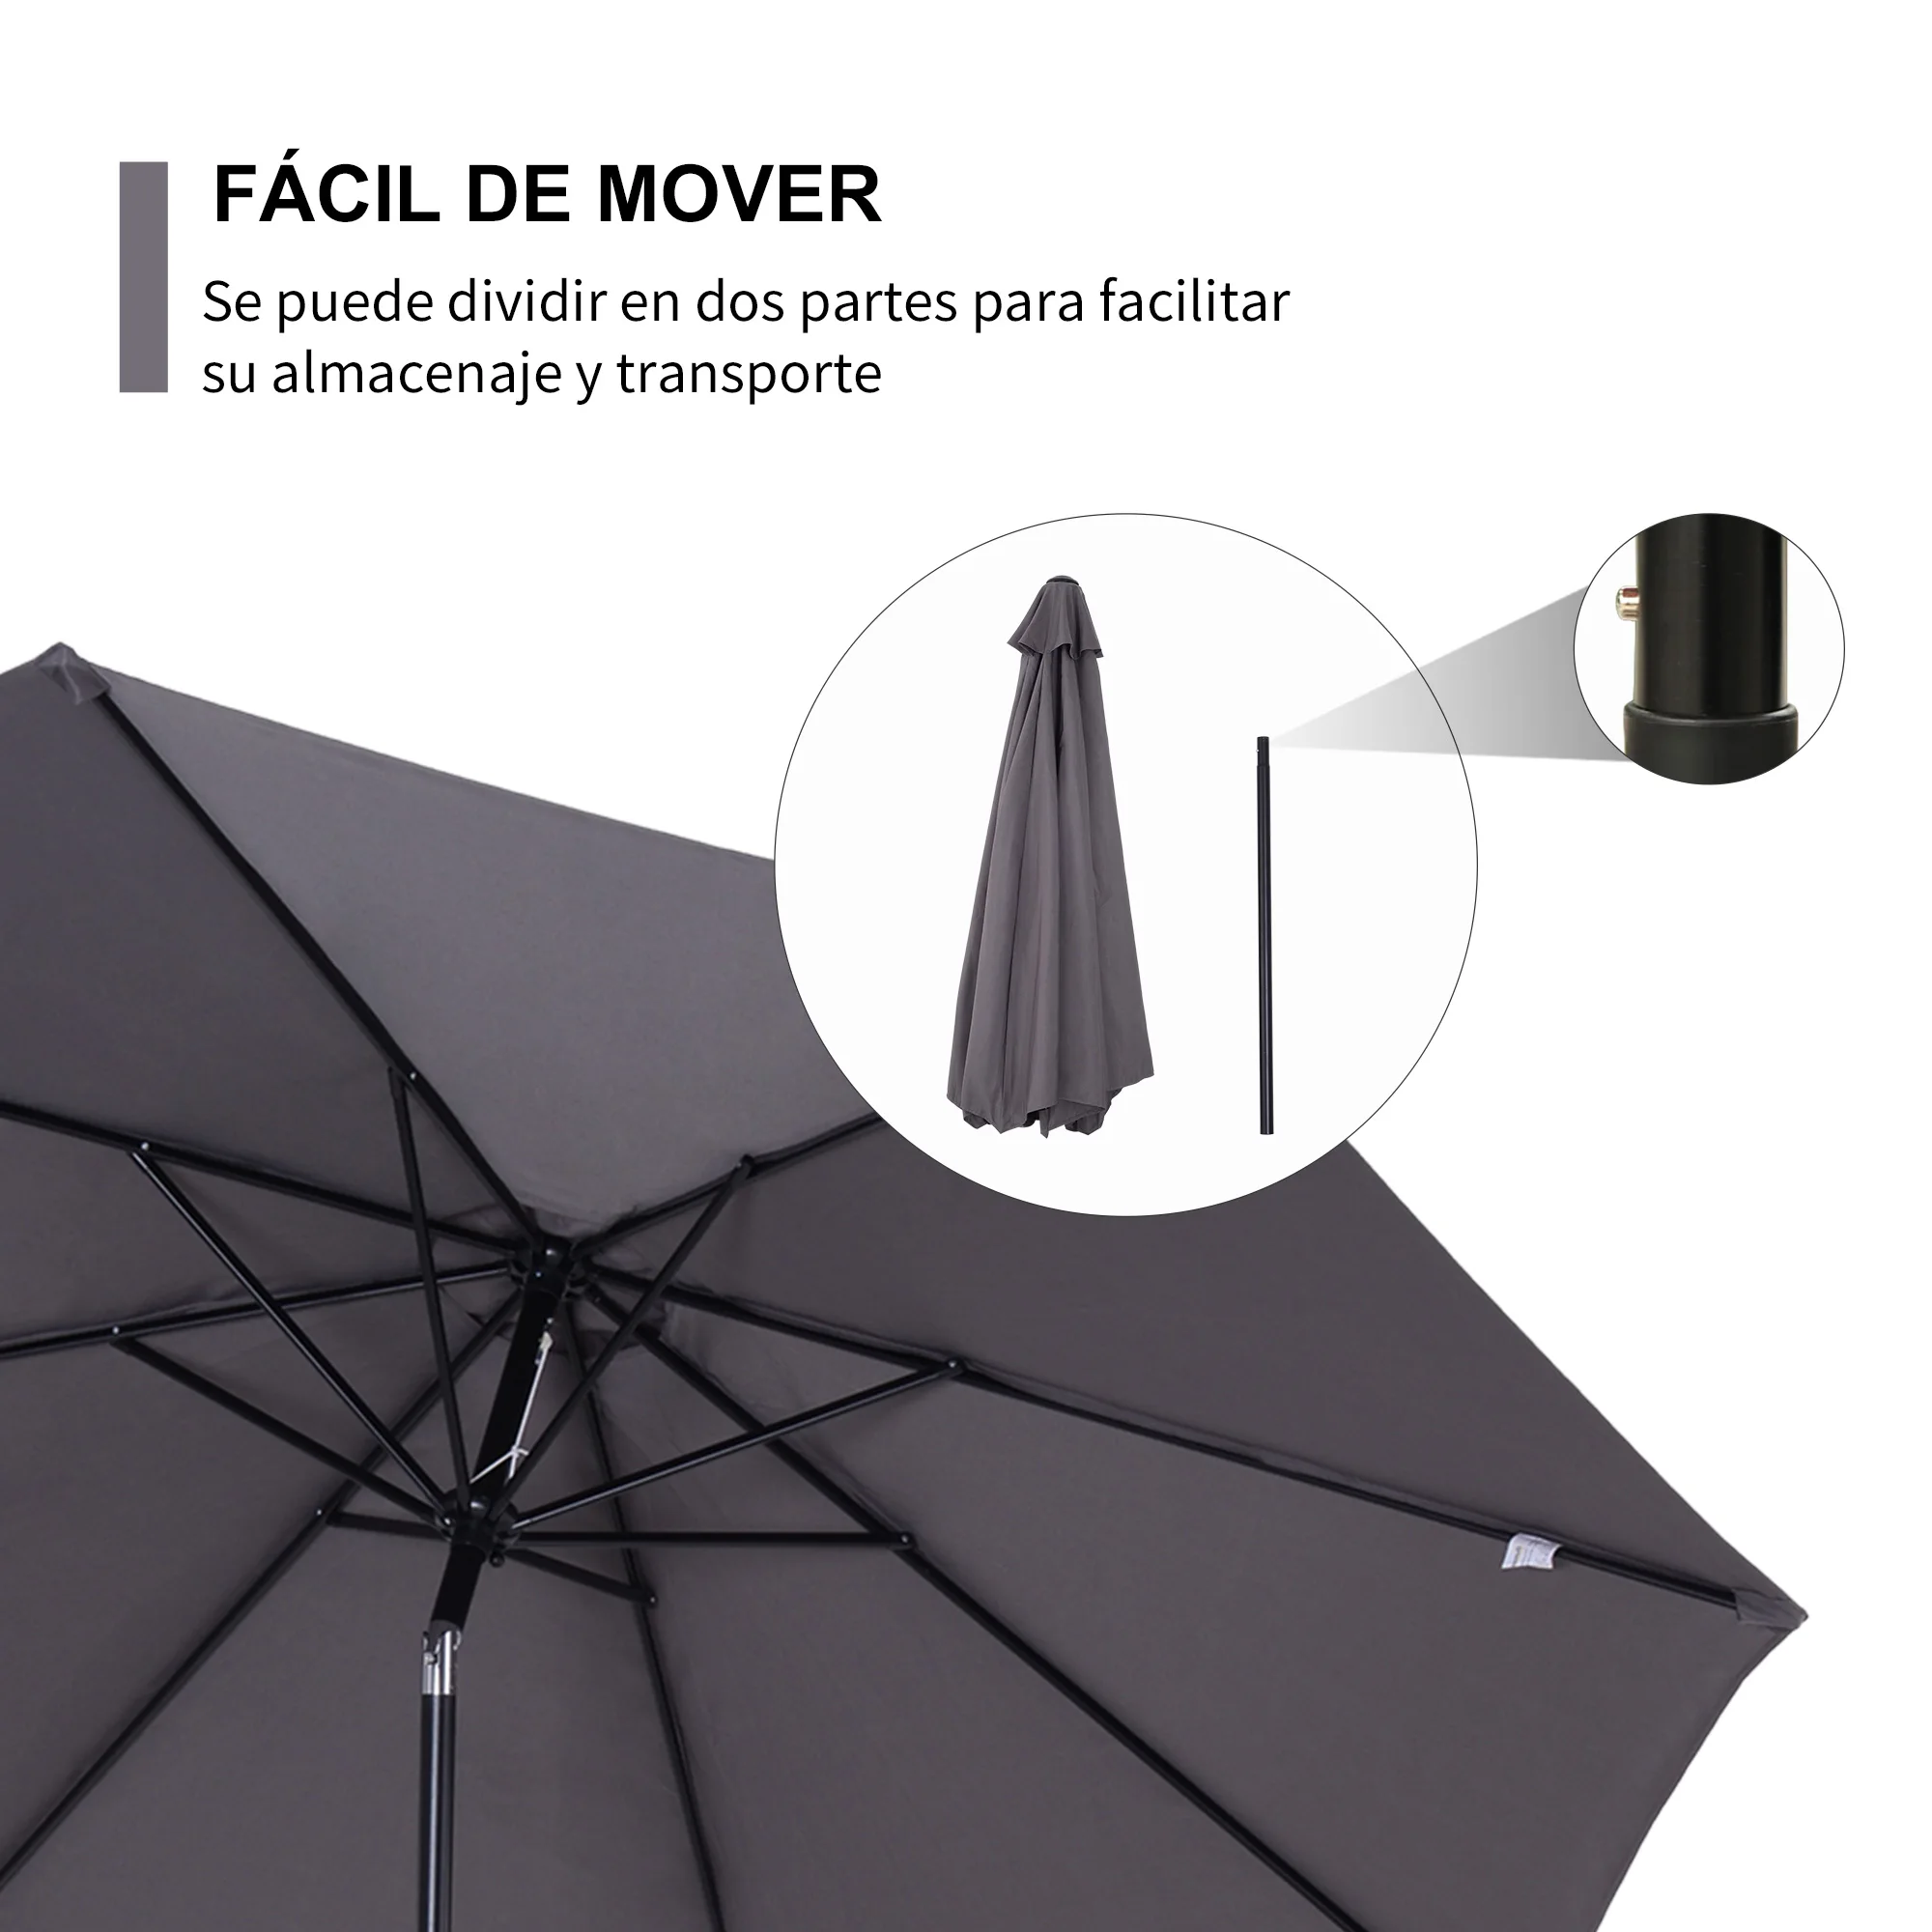 Grande guarda-chuva destacável do jardim, ângulo ajustável e manivela, abertura fácil, exterior, cinza, 300x245cm